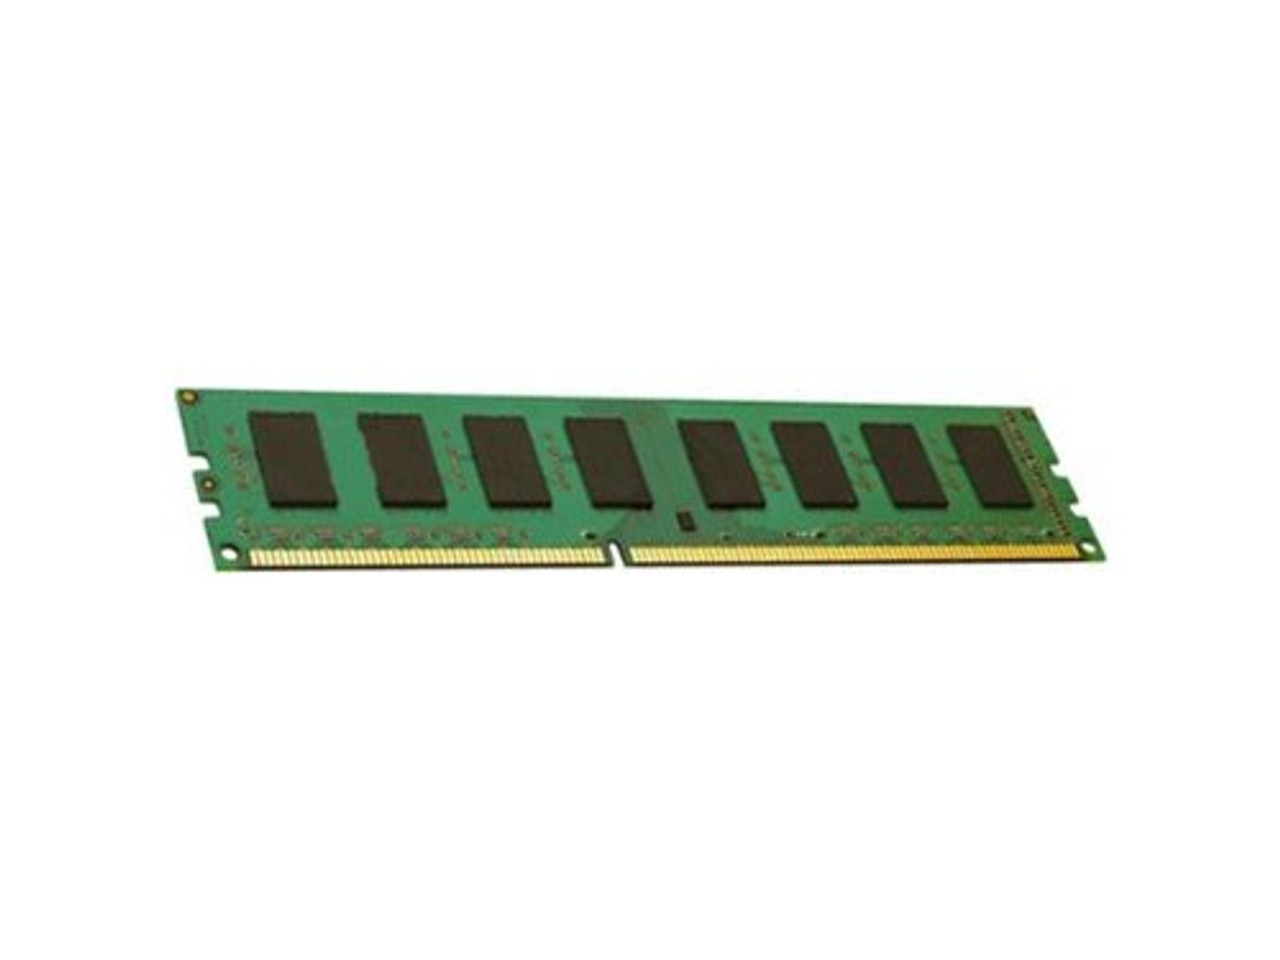 ENET 128GB DDR4 SDRAM Memory Module - P11040-B21-ENC